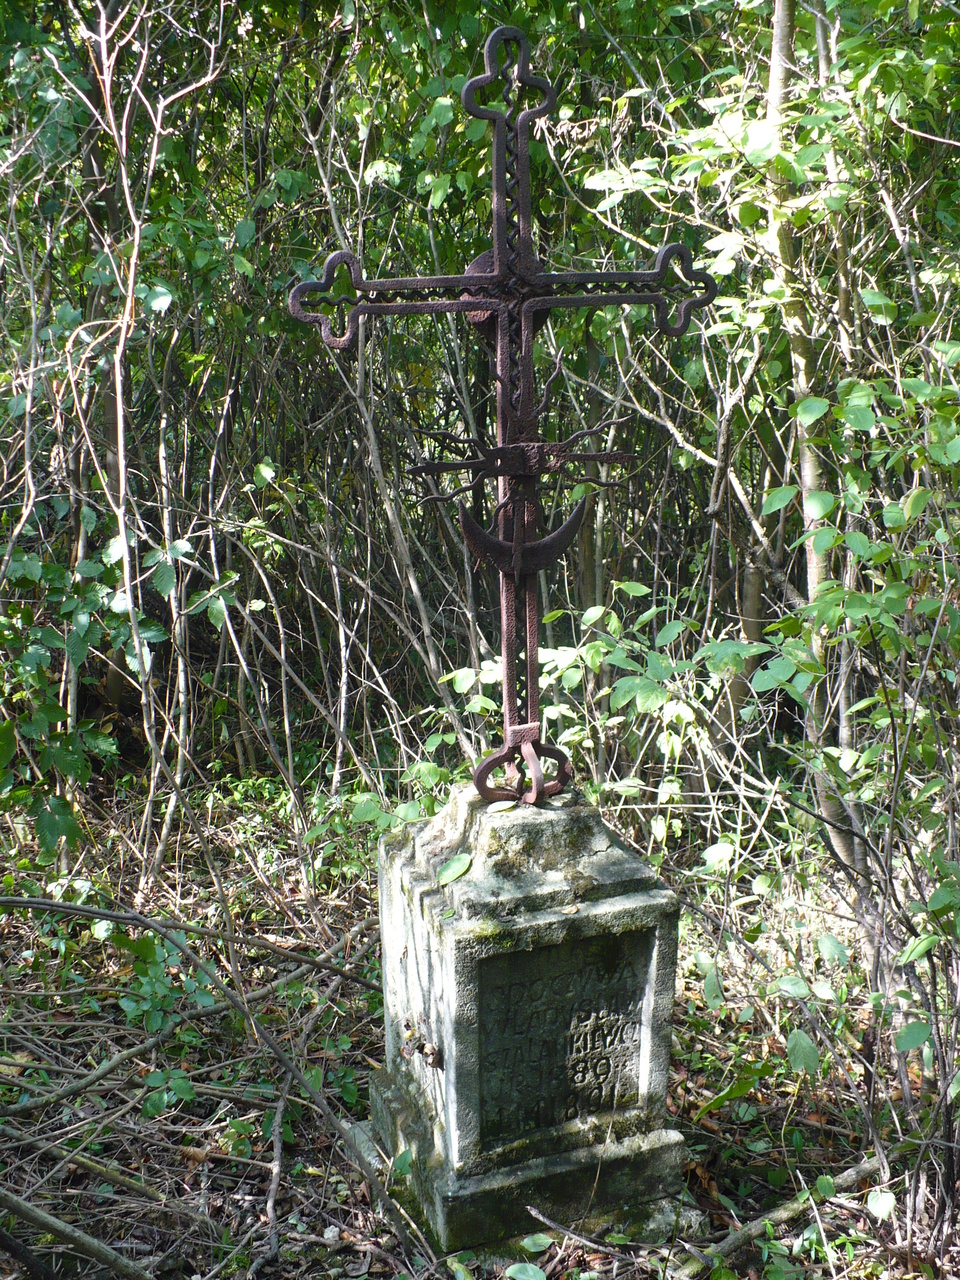 Tombstone of Władysław Szałankiewicz, cemetery in Czeronogród (Nyrkiv), state from 2005